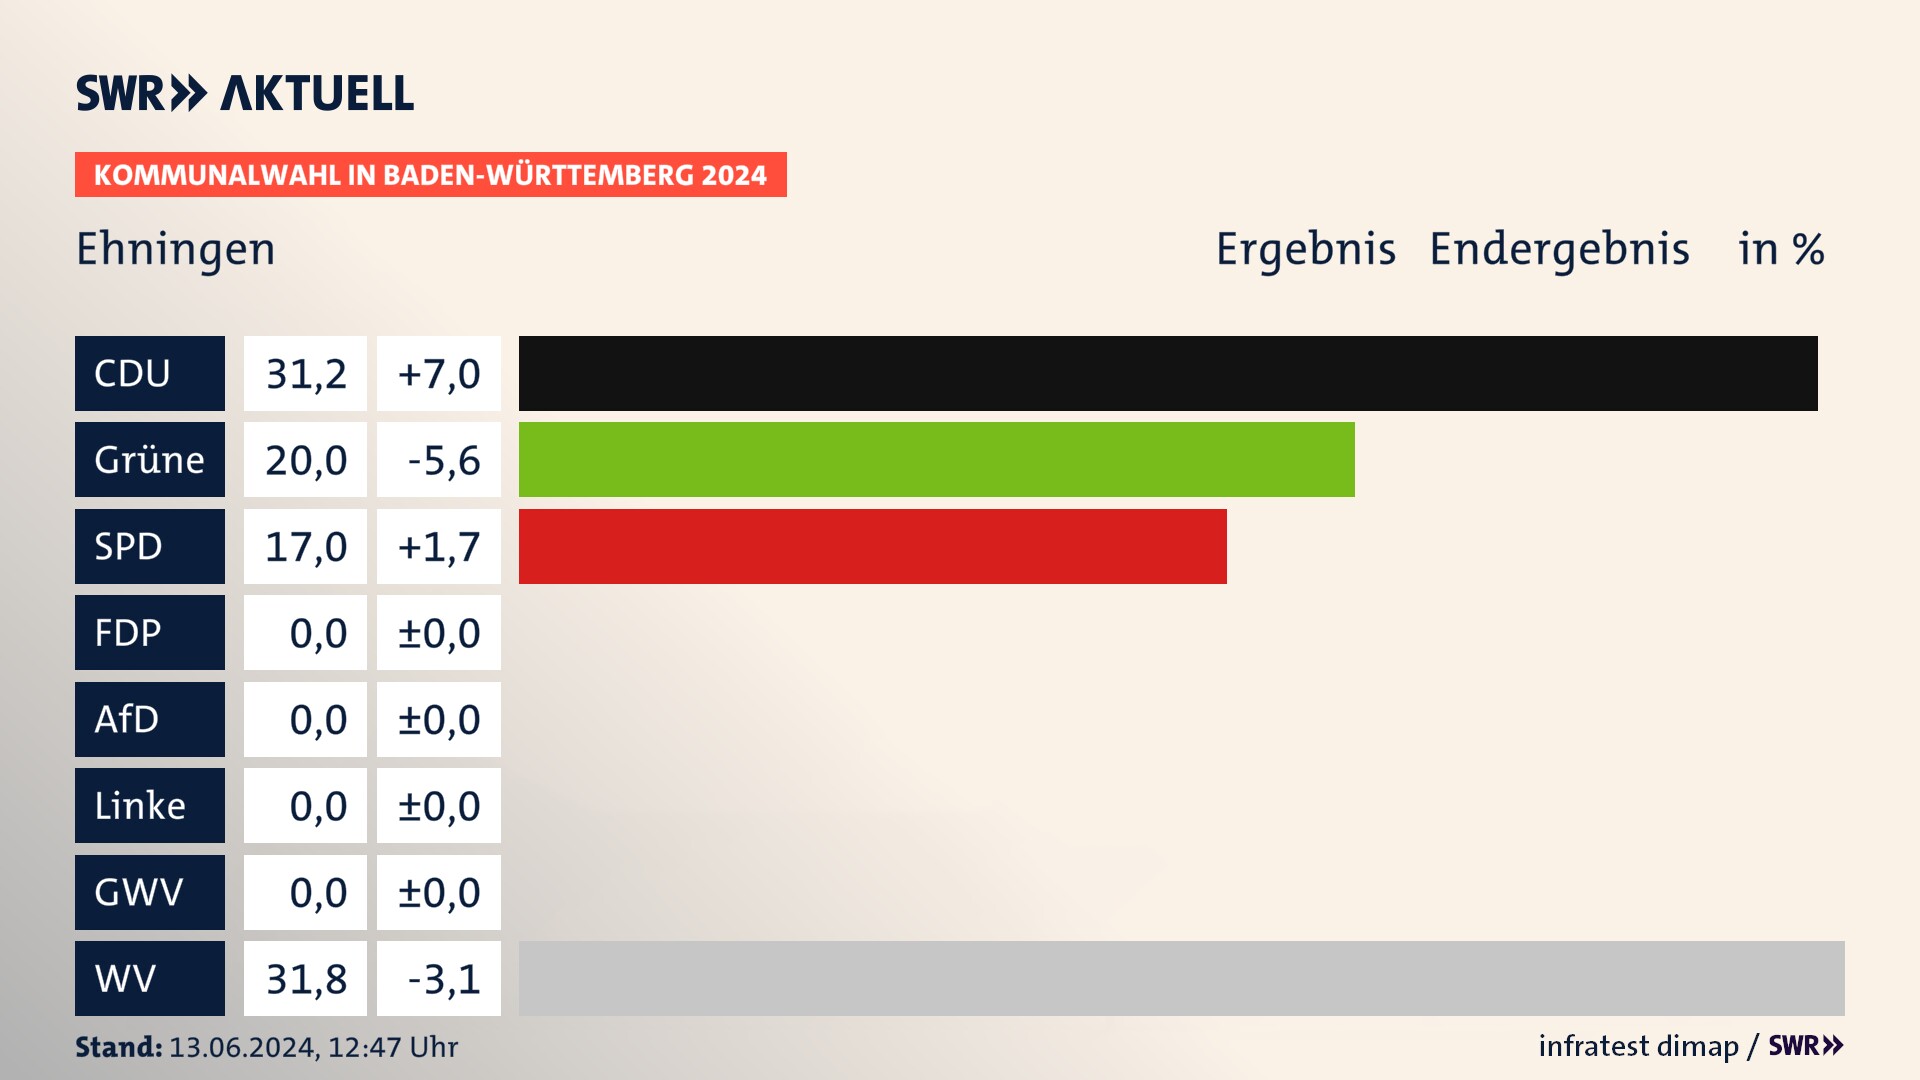 Kommunalwahl 2024 Endergebnis Zweitstimme für Ehningen. In Ehningen erzielt die CDU 31,2 Prozent der gültigen  Stimmen. Die Grünen landen bei 20,0 Prozent. Die SPD erreicht 17,0 Prozent. Die Wählervereinigungen kommen auf 31,8 Prozent.